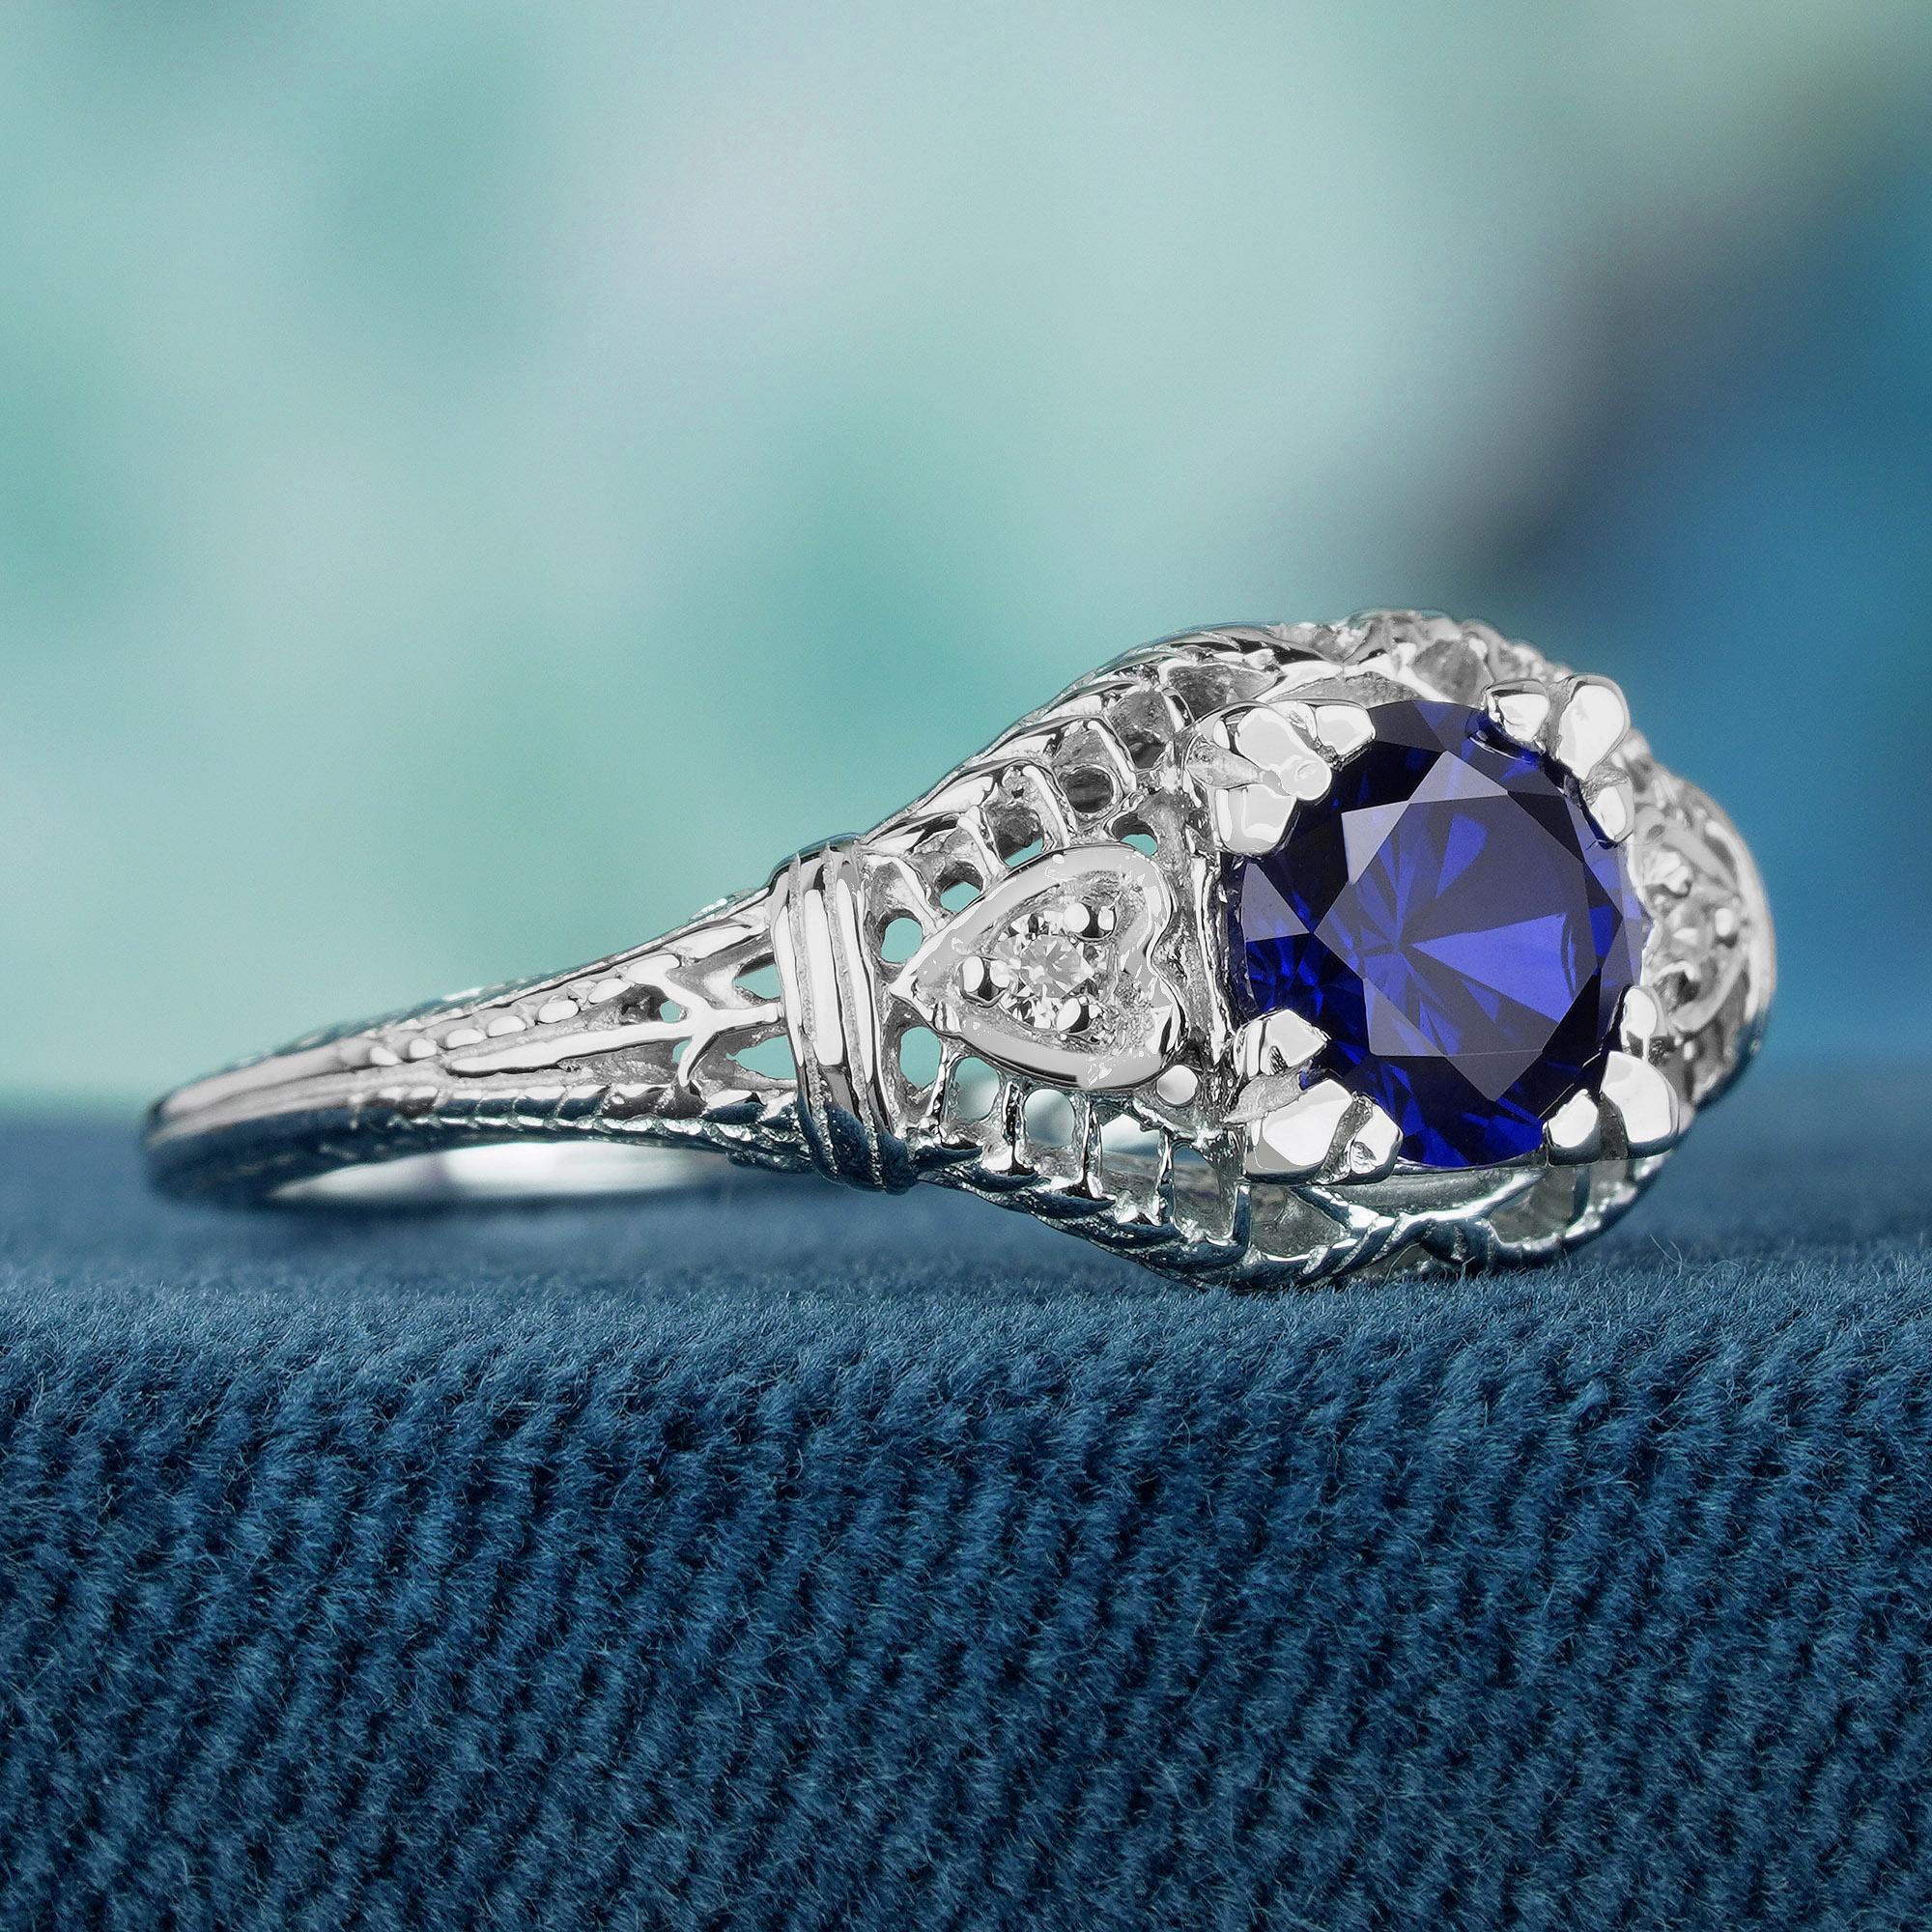 Dieser bezaubernde Ring aus leuchtendem Weißgold mit zarter Maserung besticht durch einen natürlichen blauen Saphir, der von glitzernden Diamanten akzentuiert wird. Filigrane Details zieren das Band und erinnern an eine zeitlose Vintage-Ästhetik.